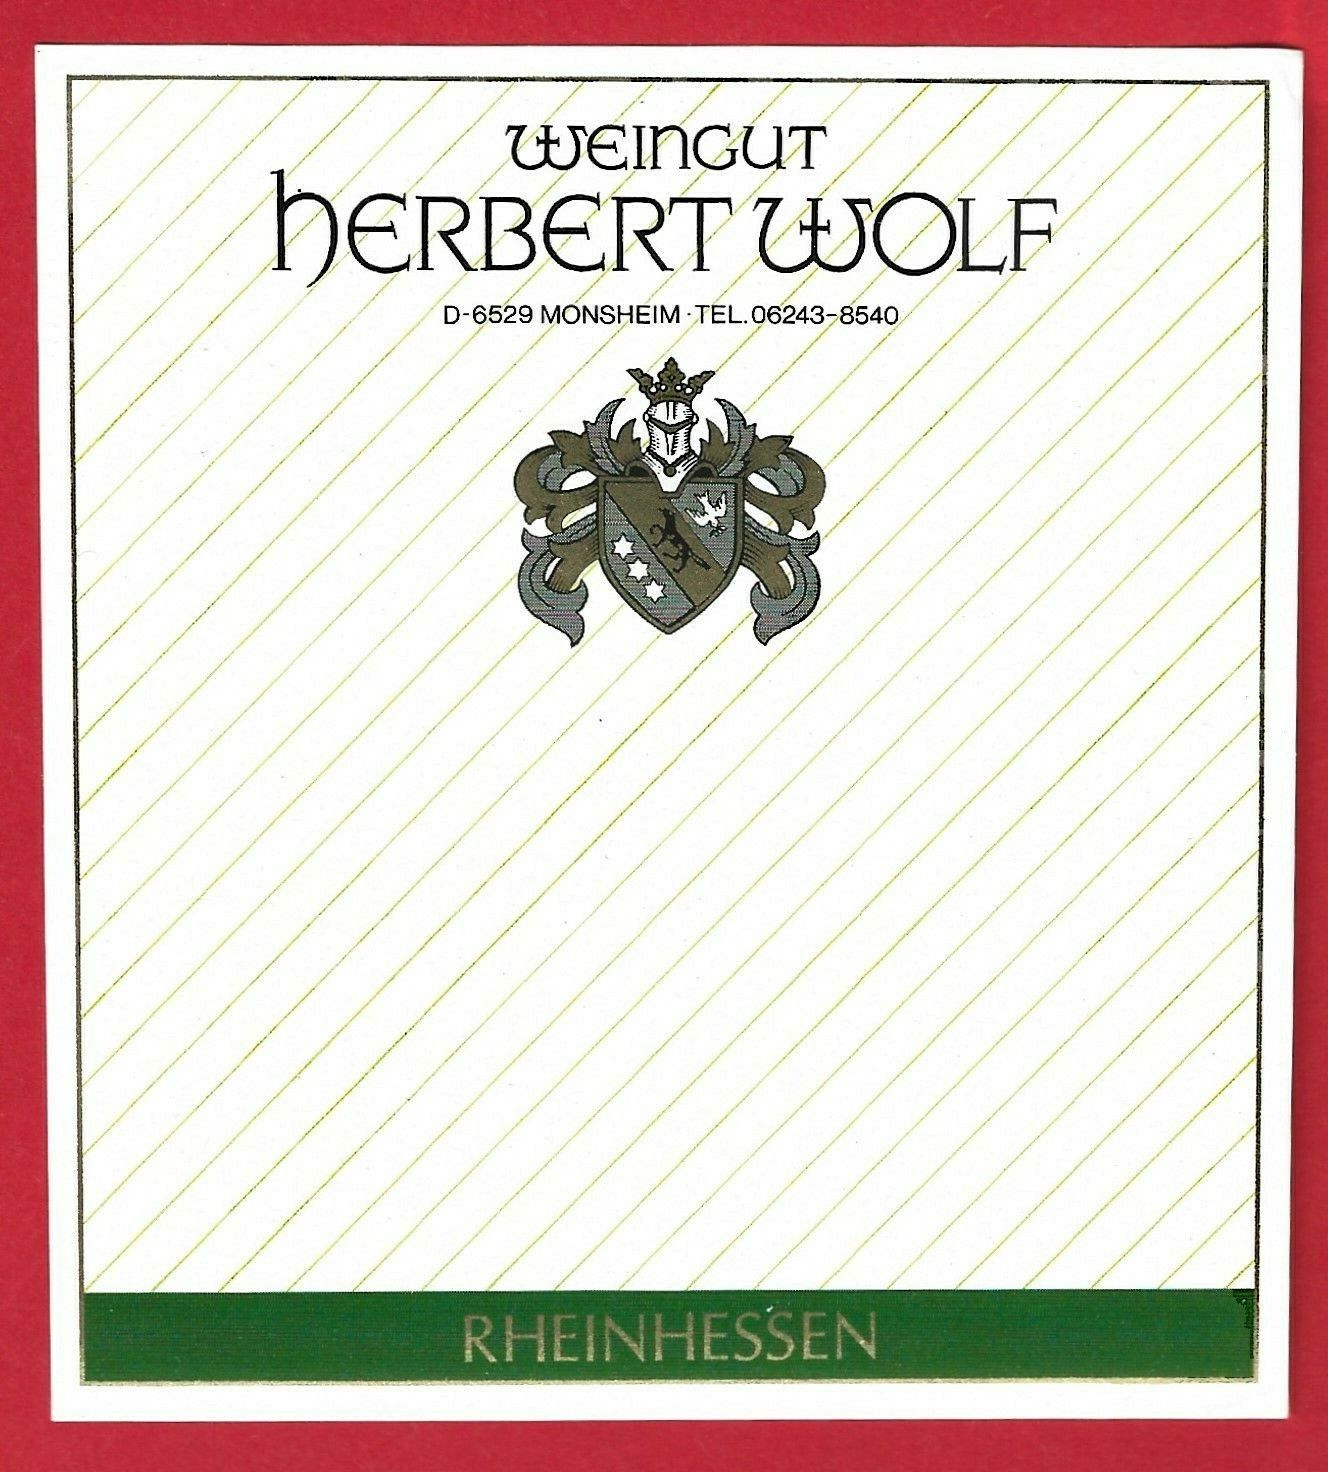 D120 label wine label RHEINHESSEN WINERY Herbert WOLF,6529 MONSHEIM